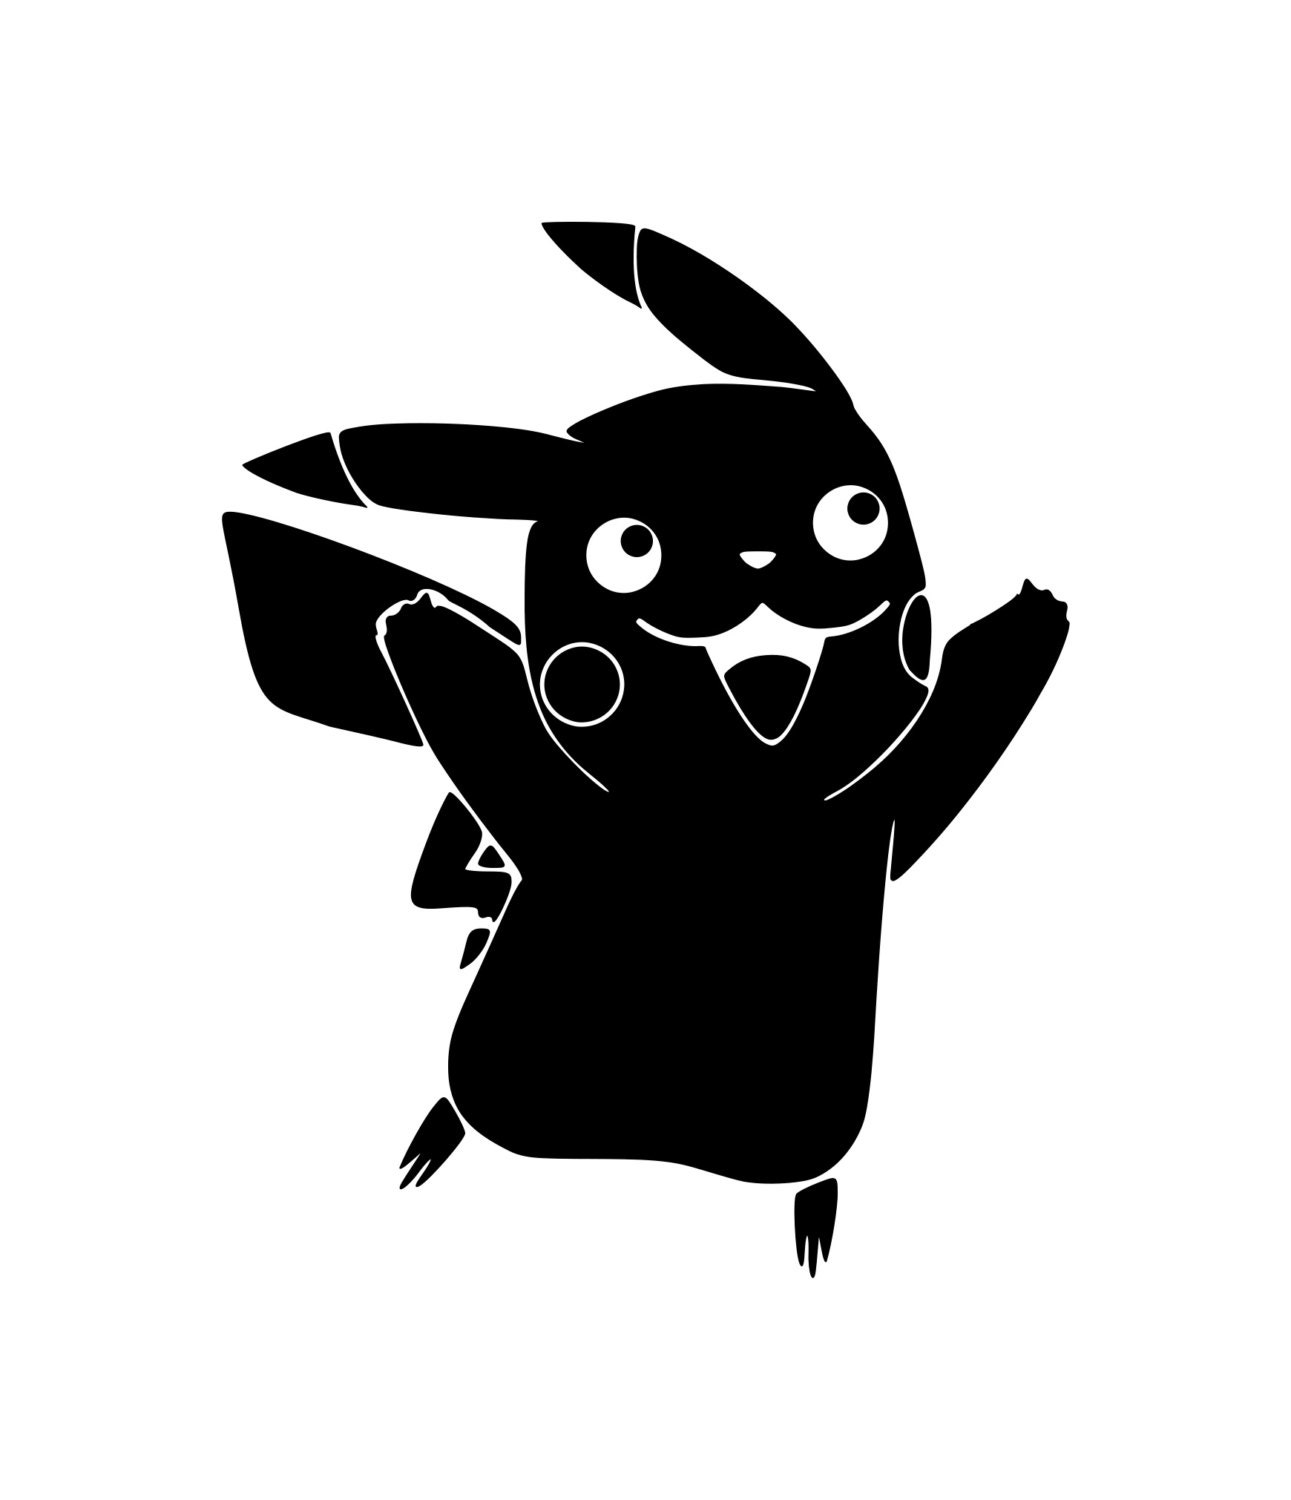 Download Pikachu Pokemon SVG File